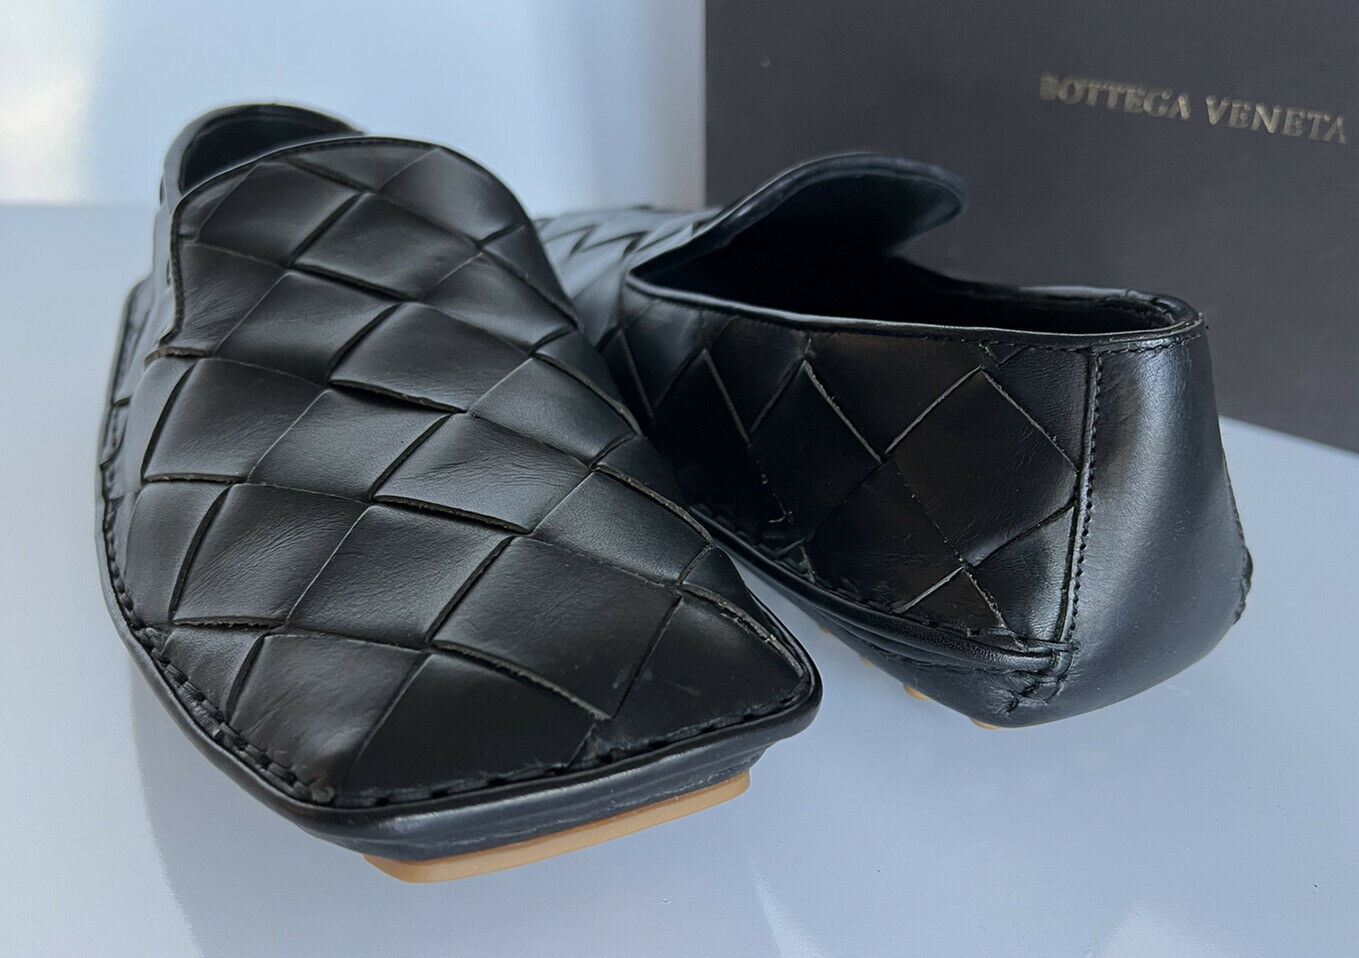 NIB $740 Bottega Veneta Douglas Intrecciato Leather Black Shoes 9 US 578309